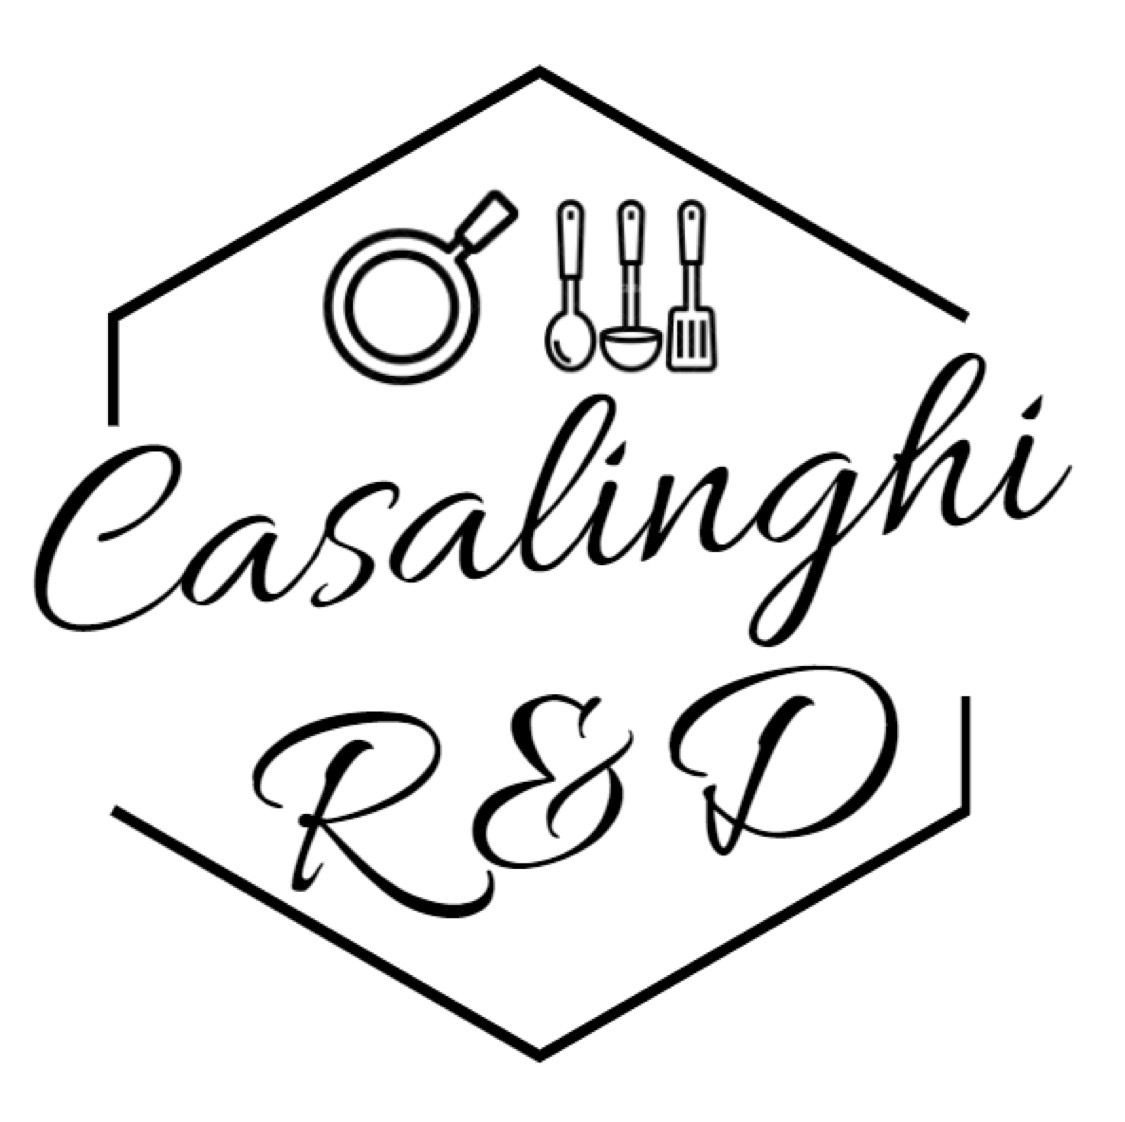 Casalinghi R&D 